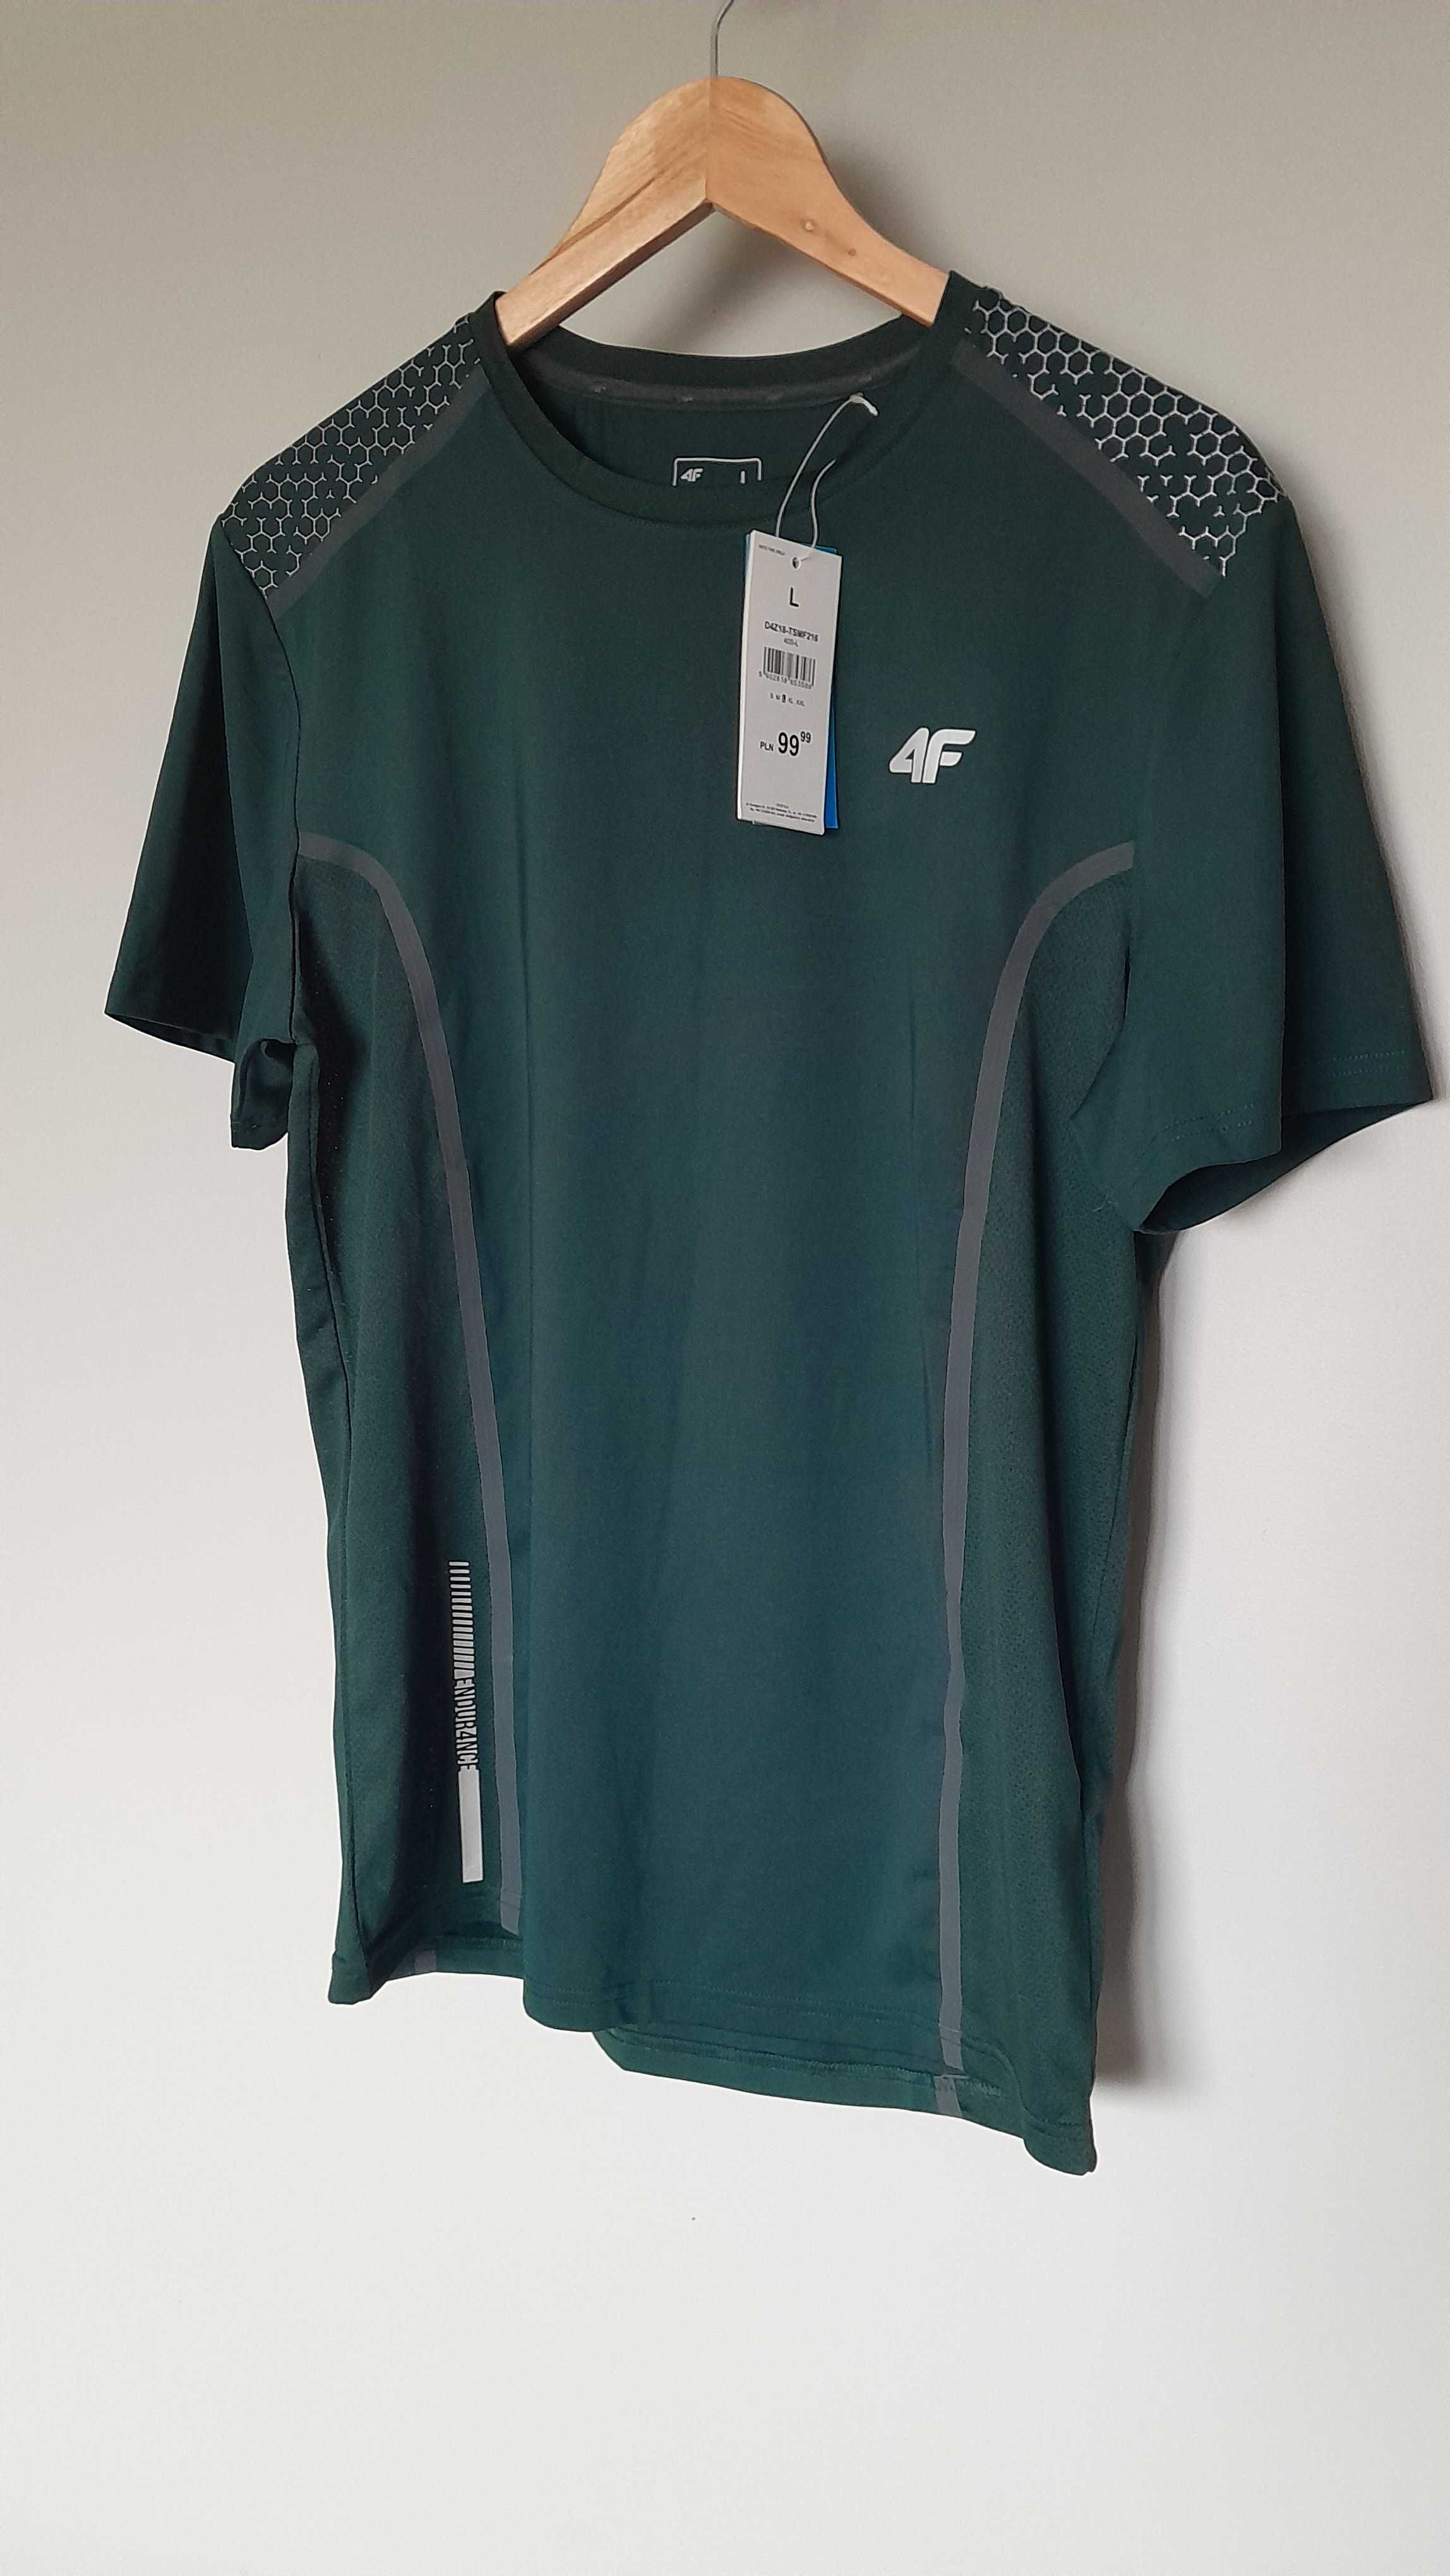 Koszulka do biegania męska TSMF216 - ciemna zieleń [rozmiar XL]